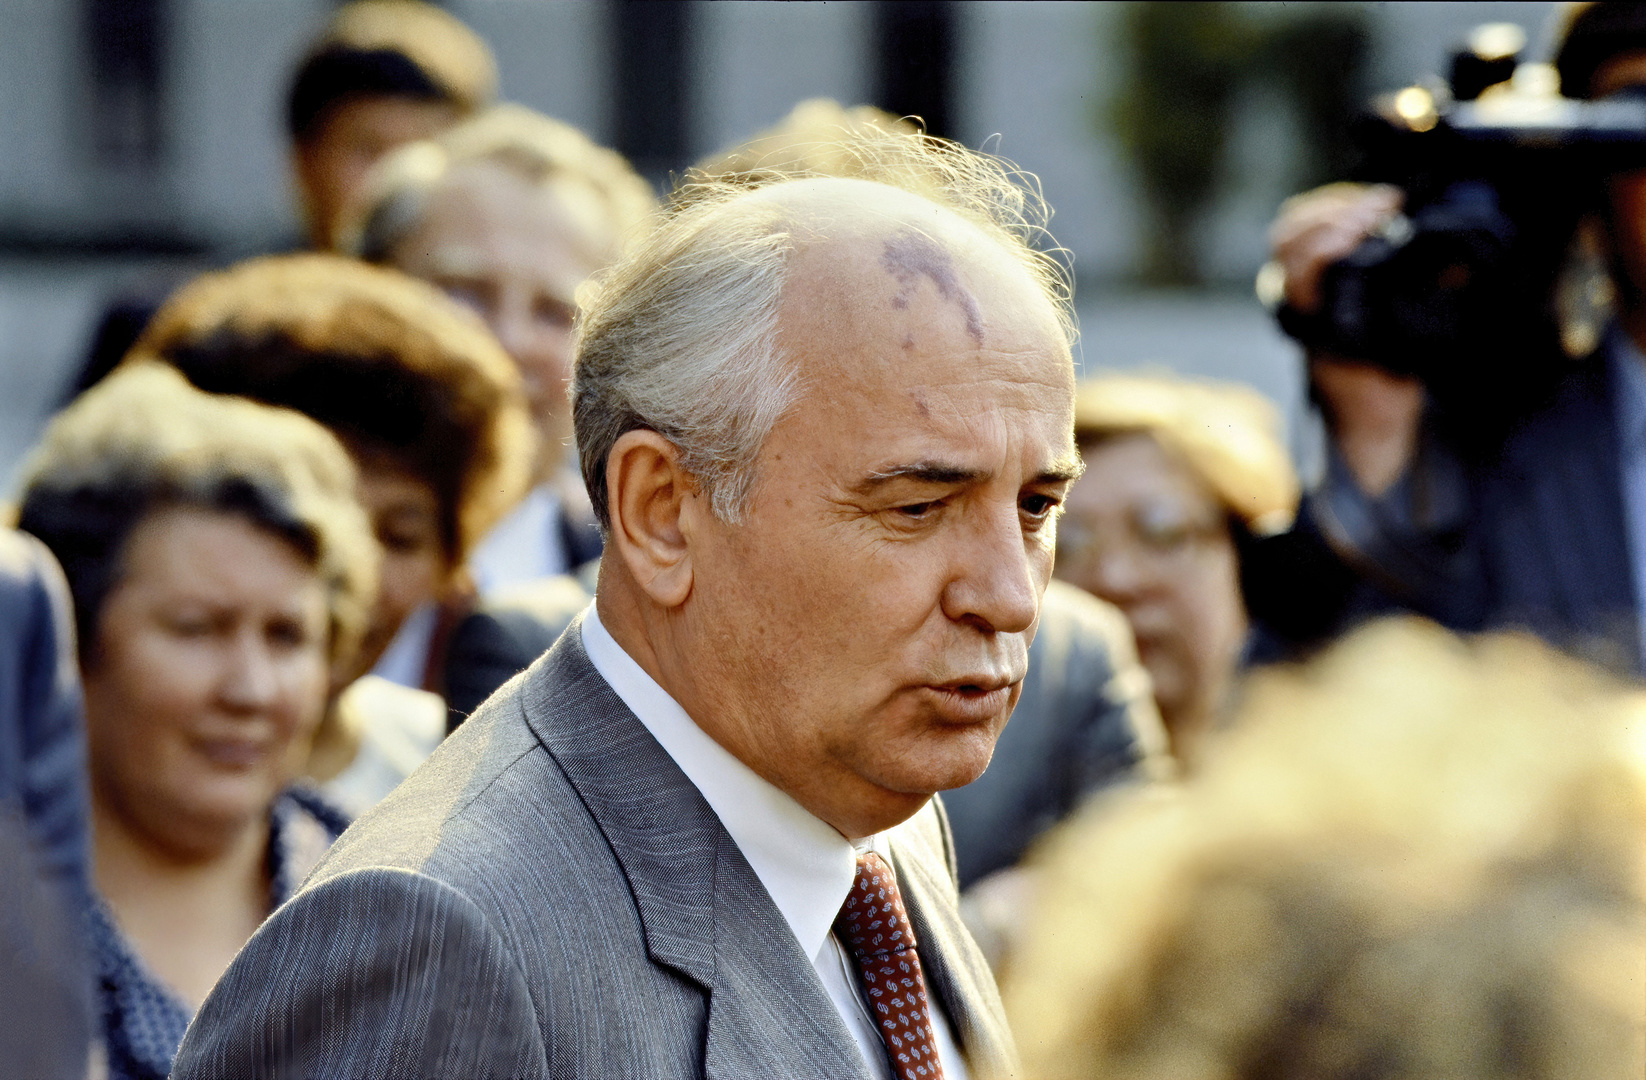 Michail Gorbatschow in Bonn am 14 Juni 1989